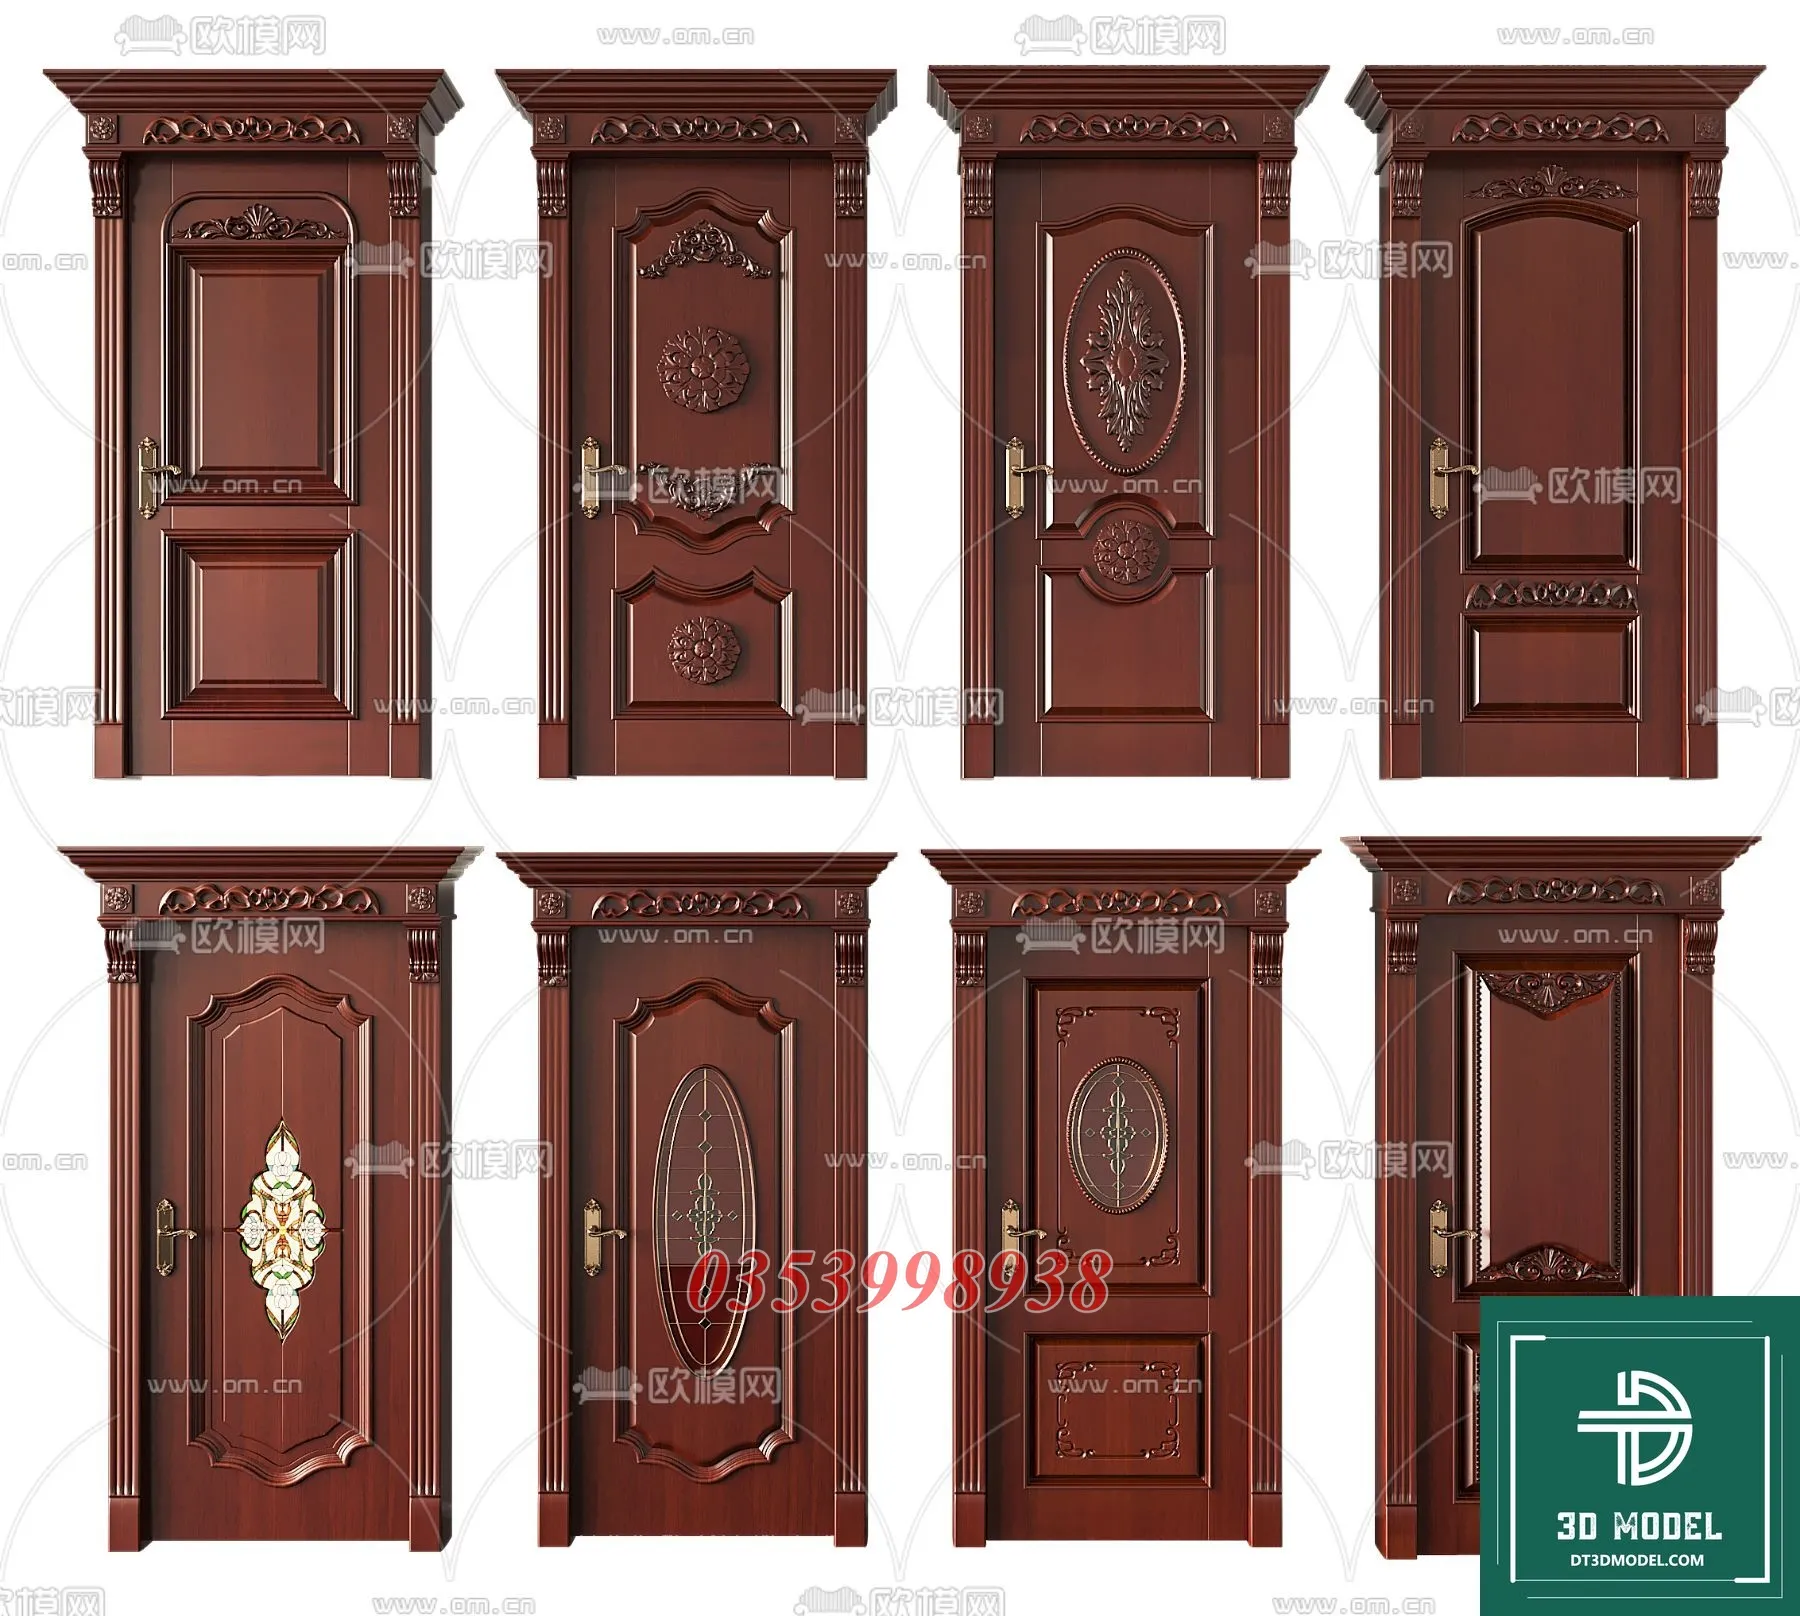 CLASSIC DOOR – 3dsmax MODELS – 088